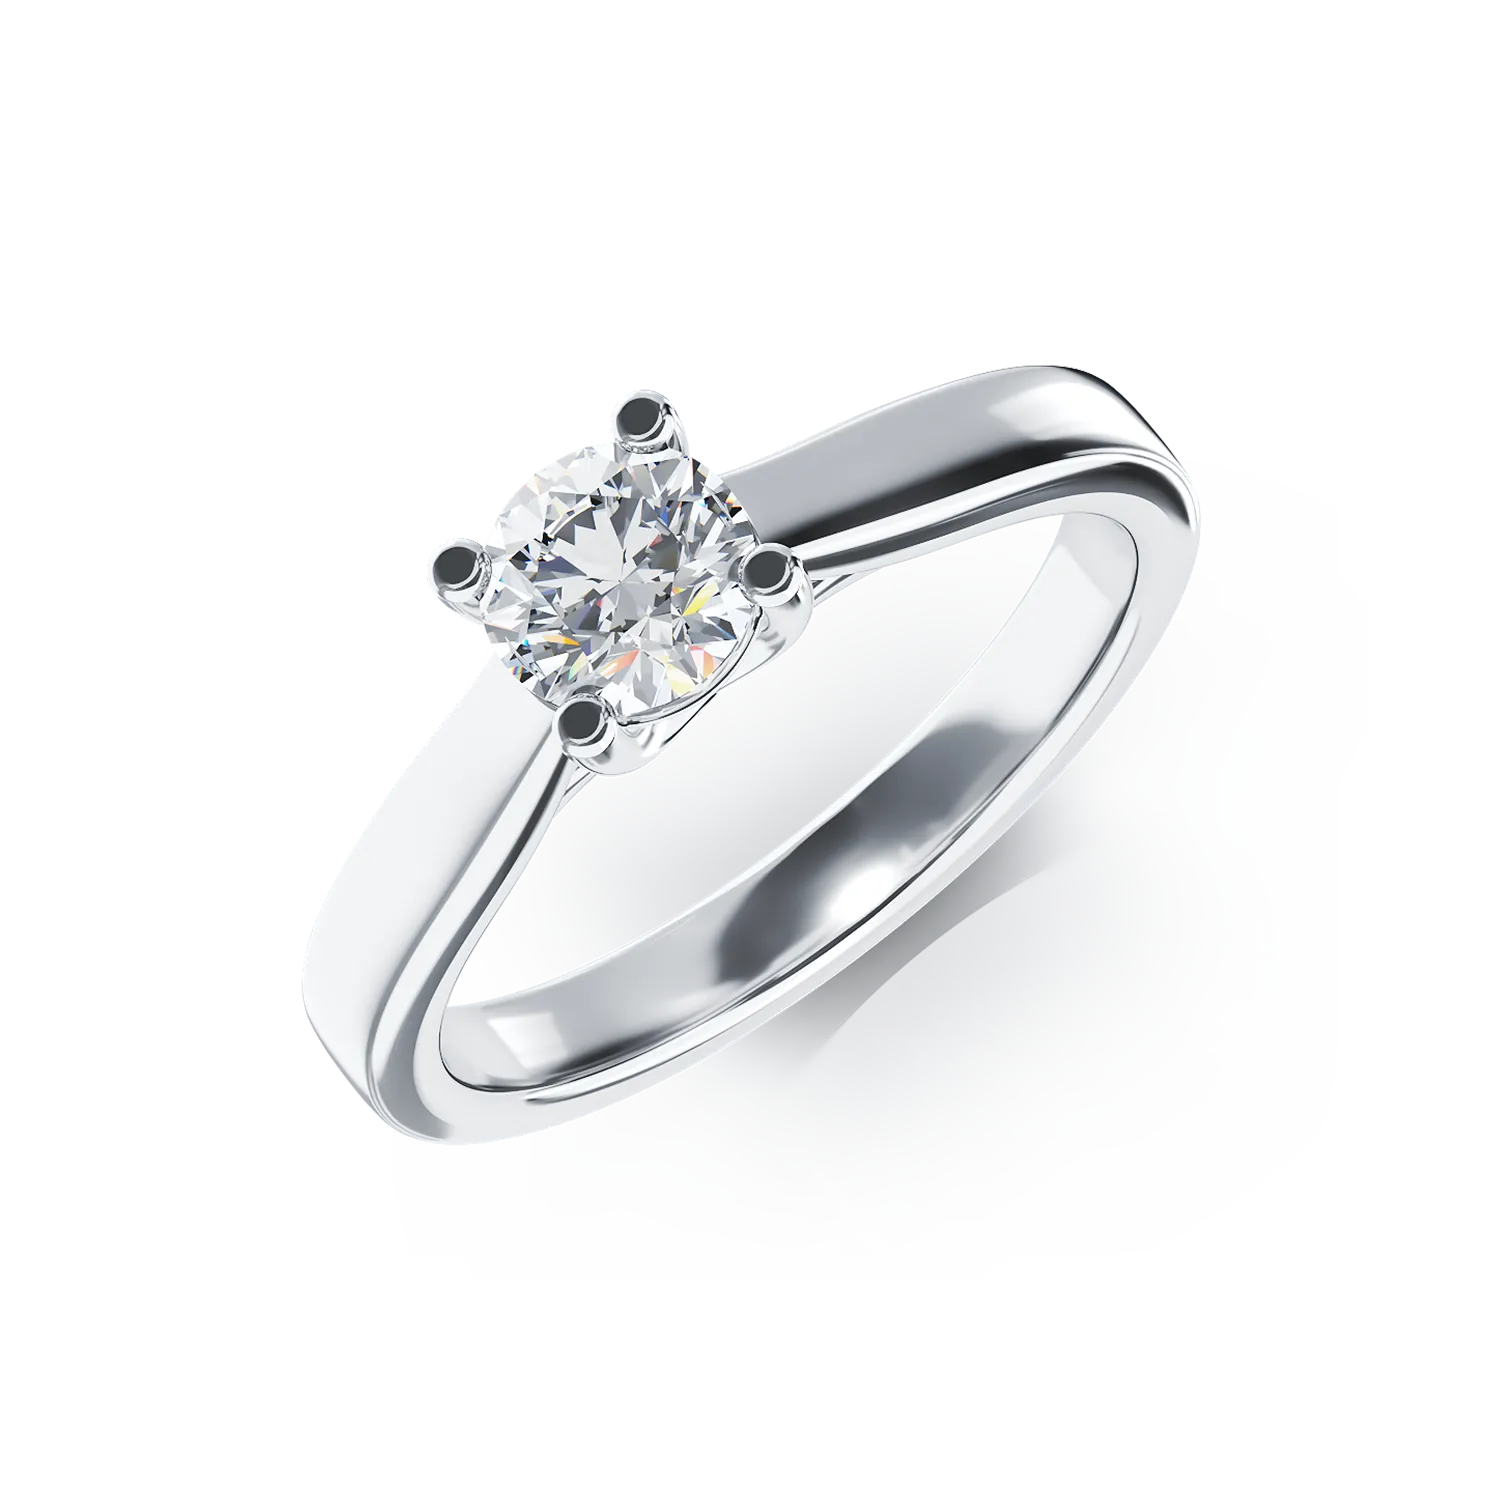 Eljegyzési gyűrű 18K-os fehér aranyból 0,5ct gyémánttal. Gramm: 4,51